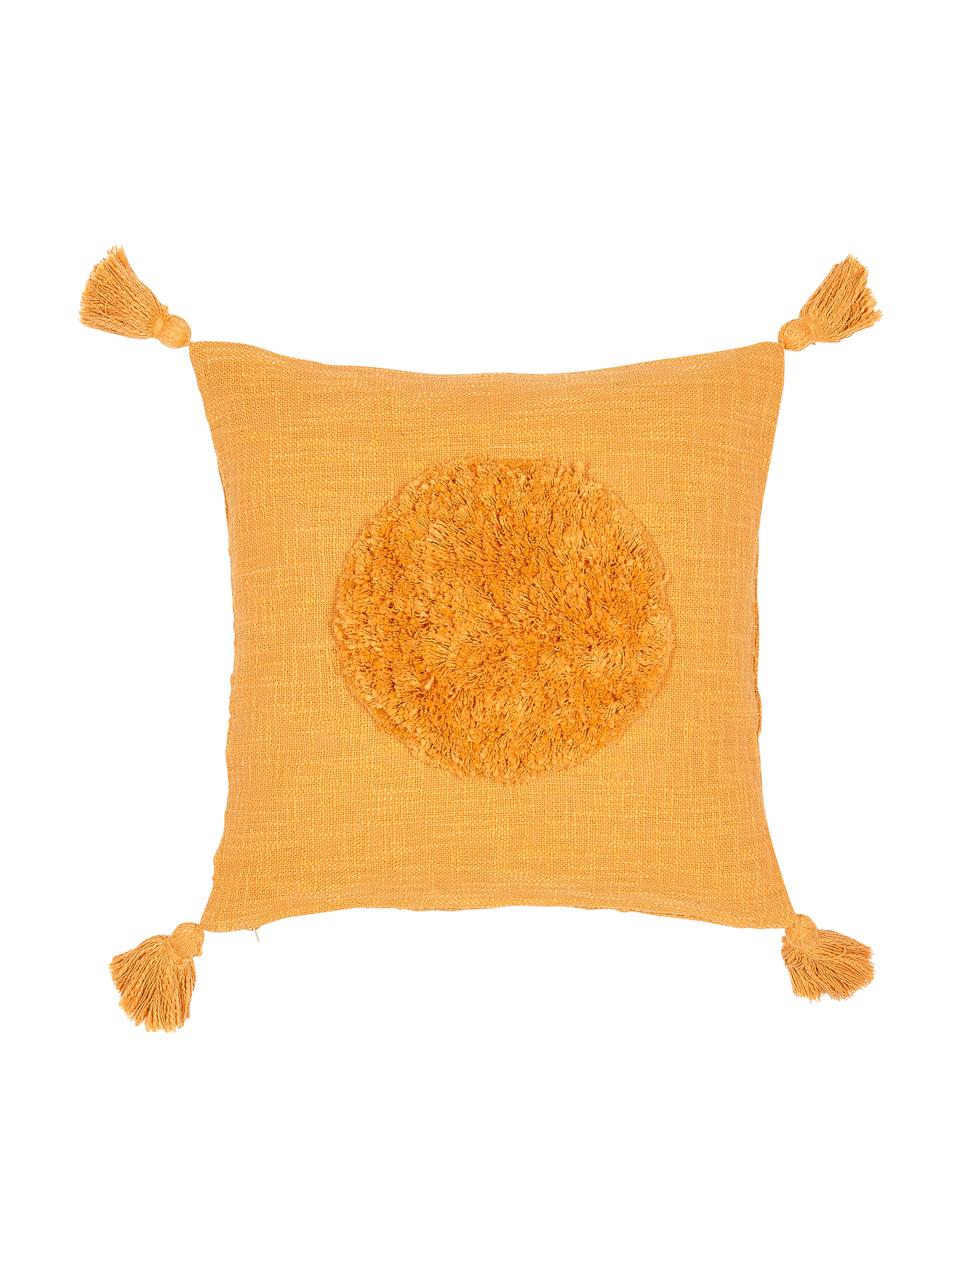 Grob gewebte Kissenhülle Sun aus Bio-Baumwolle mit Tasseln, 100% Bio-Baumwolle, Gelb, 45 x 45 cm